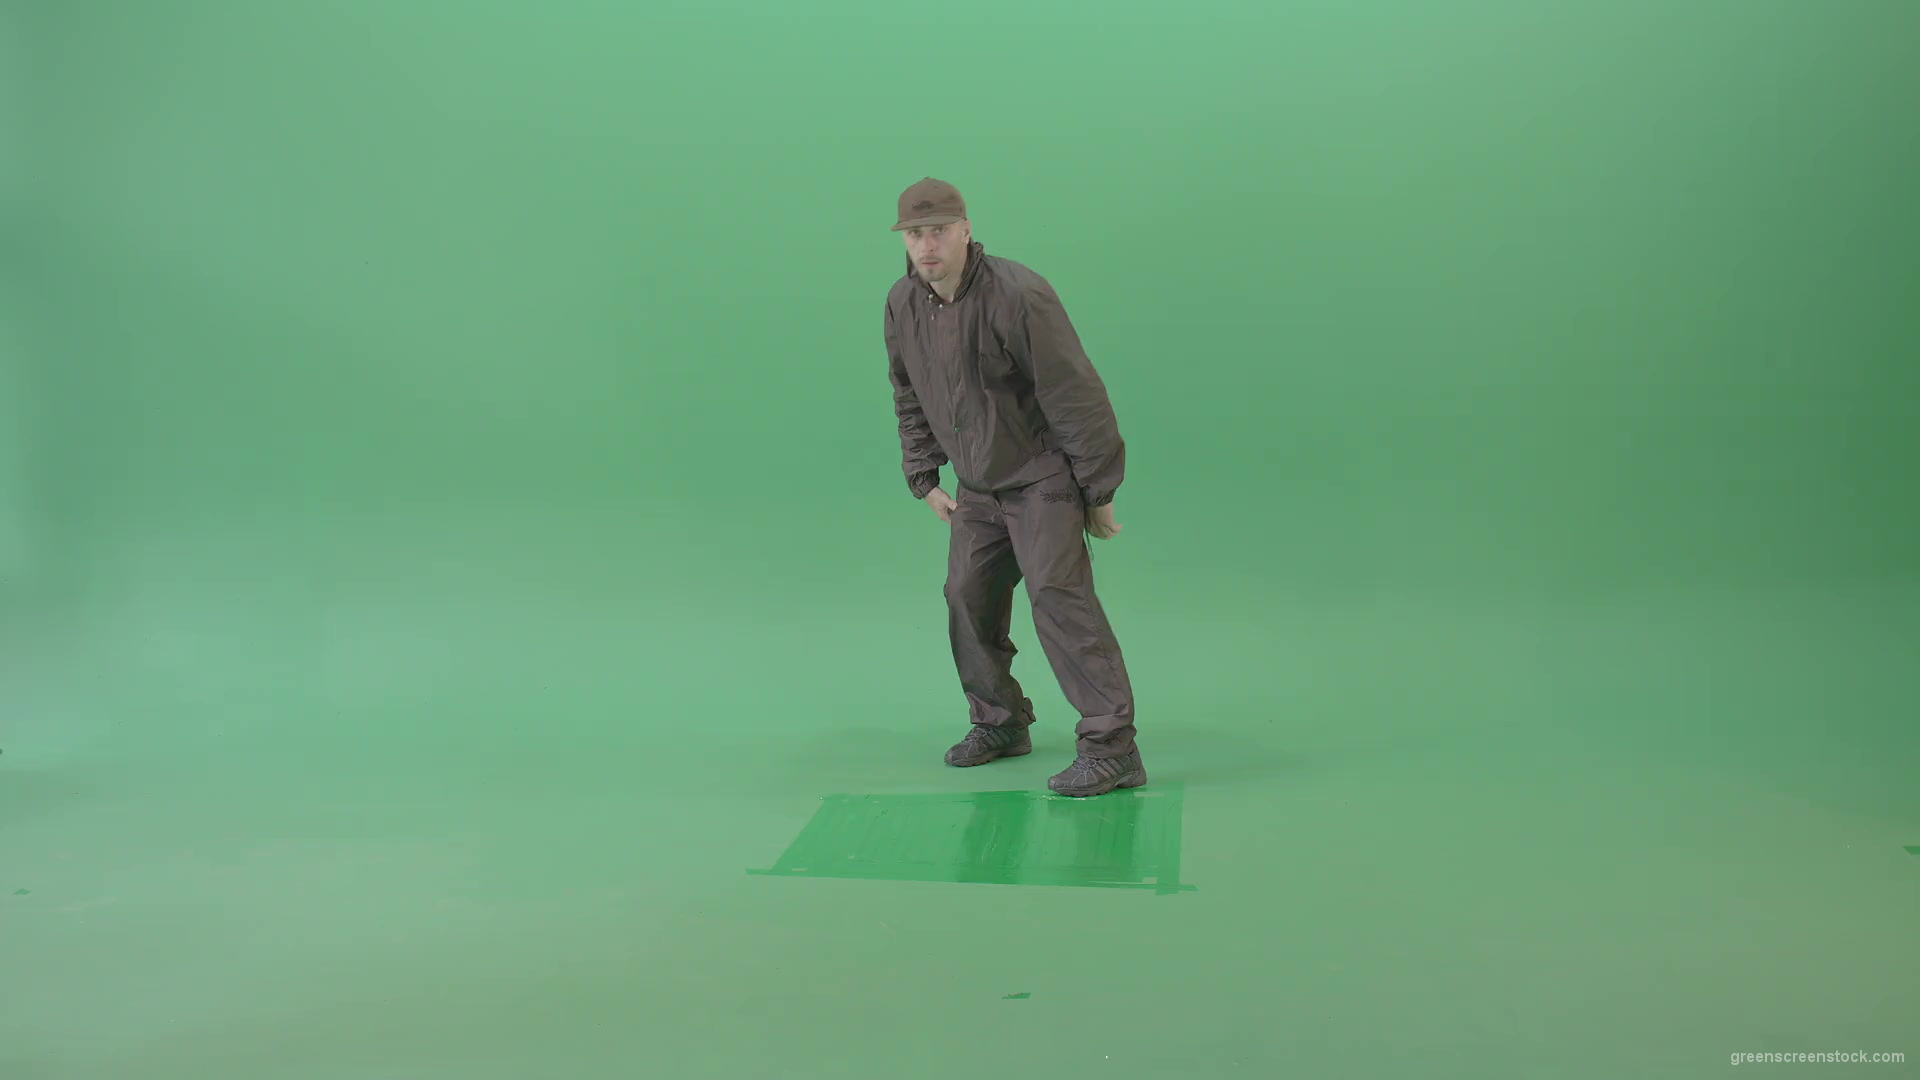 Man-dancing-breakdance-on-green-screen-4K-Video-Footage-1920_001 Green Screen Stock